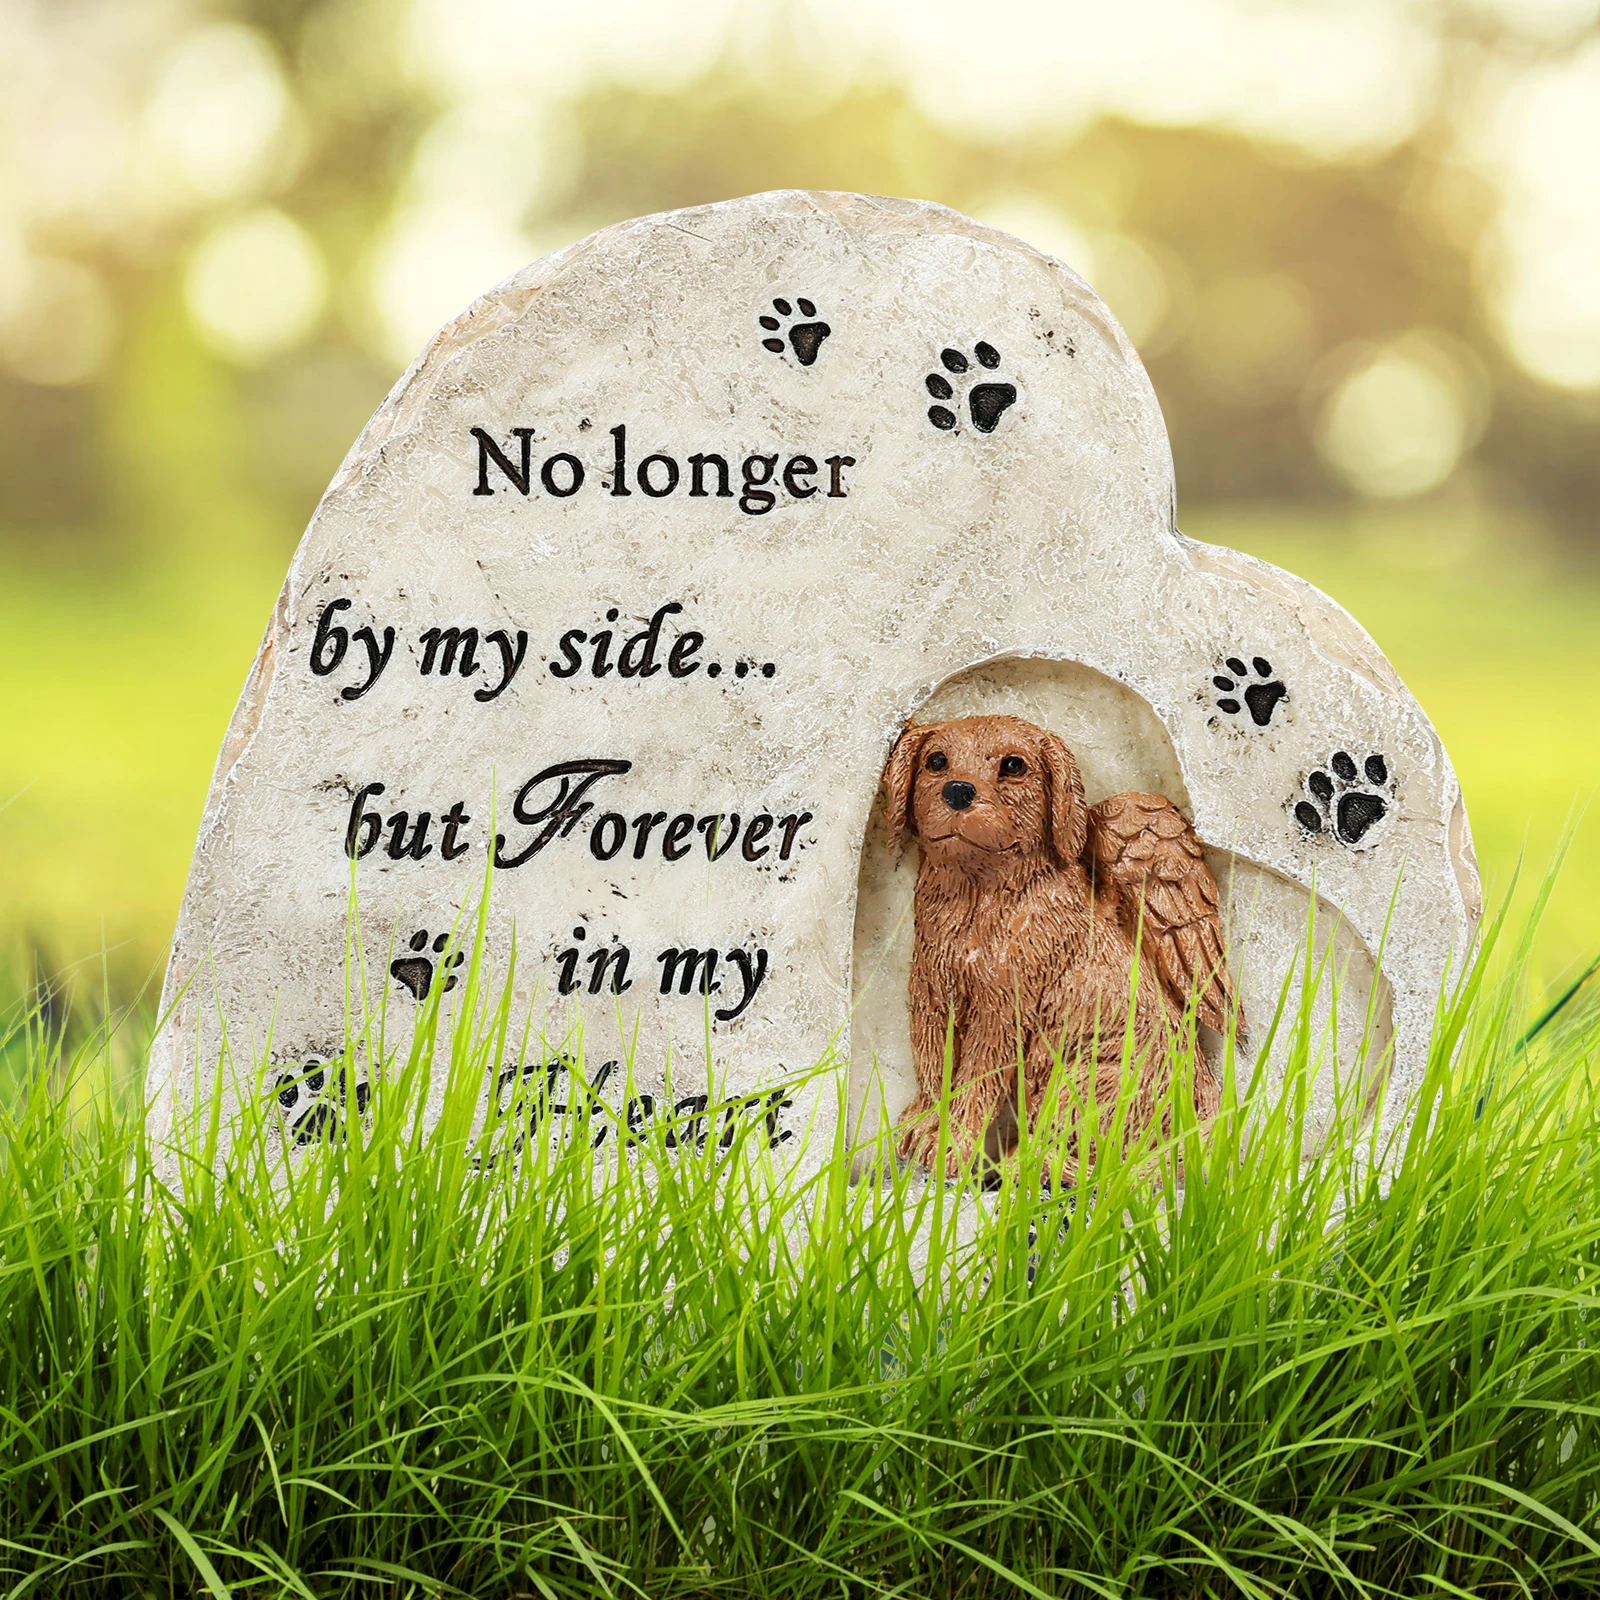 

Памятный камень для собаки, полимерная памятная статуя сочувствия для питомца, собачья лапа в форме сердца, шаговый сад, заголовок, потеря питомца, подарки для уличной собаки